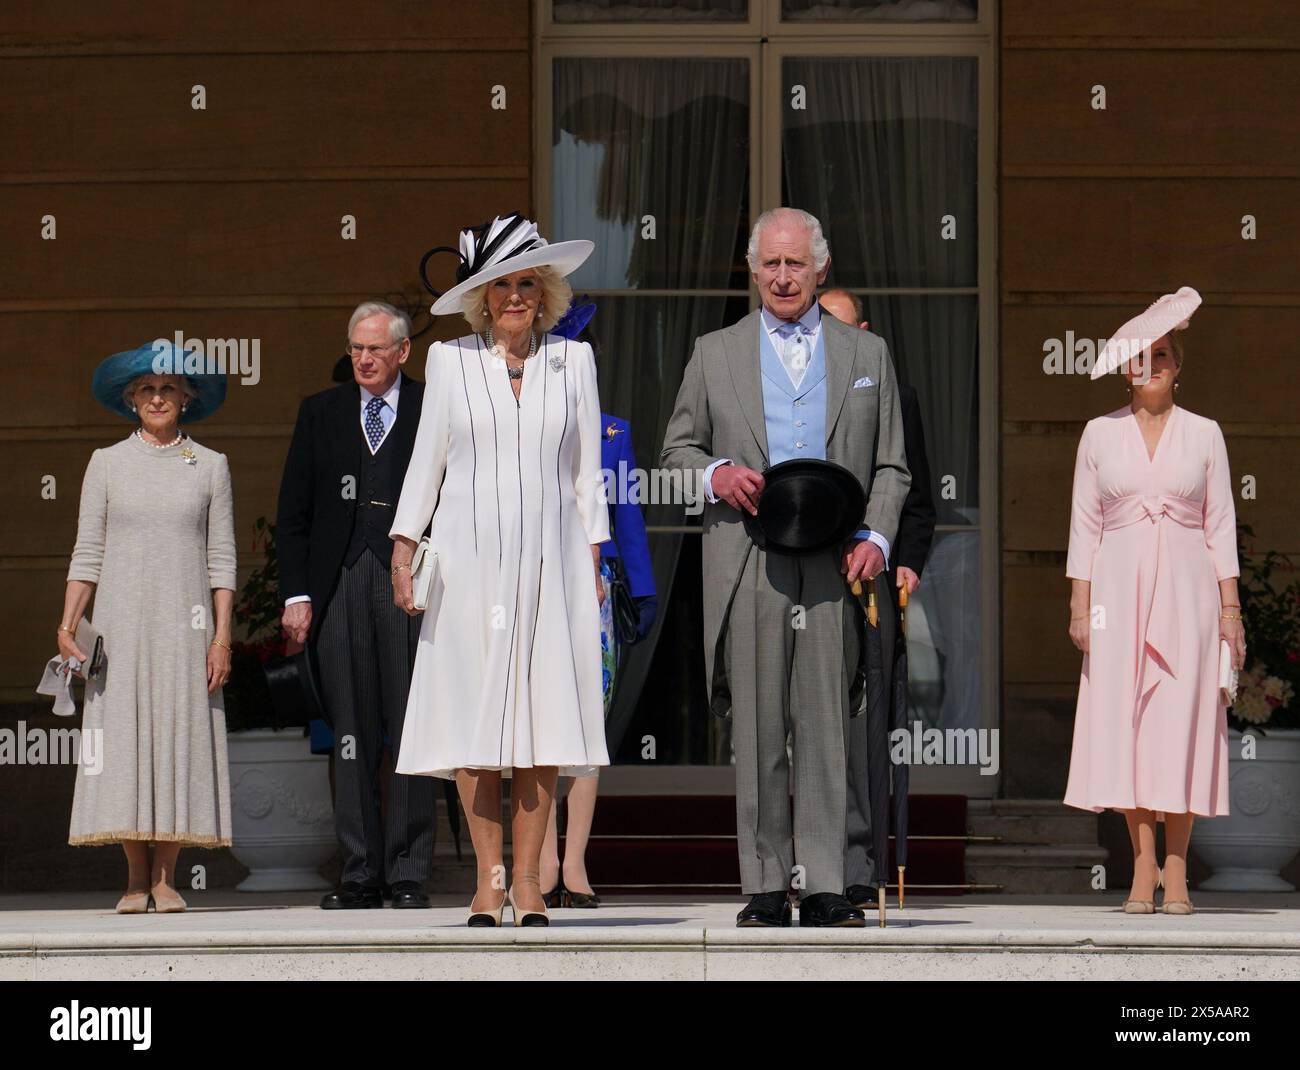 König Karl III. Und Königin Camilla stehen mit dem Herzog und der Herzogin von Edinburgh (rechts) und dem Herzog und der Herzogin von Gloucester (links) zusammen, während sie die Nationalhymne während einer Royal Garden Party im Buckingham Palace, London, hören. Bilddatum: Mittwoch, 8. Mai 2024. Stockfoto